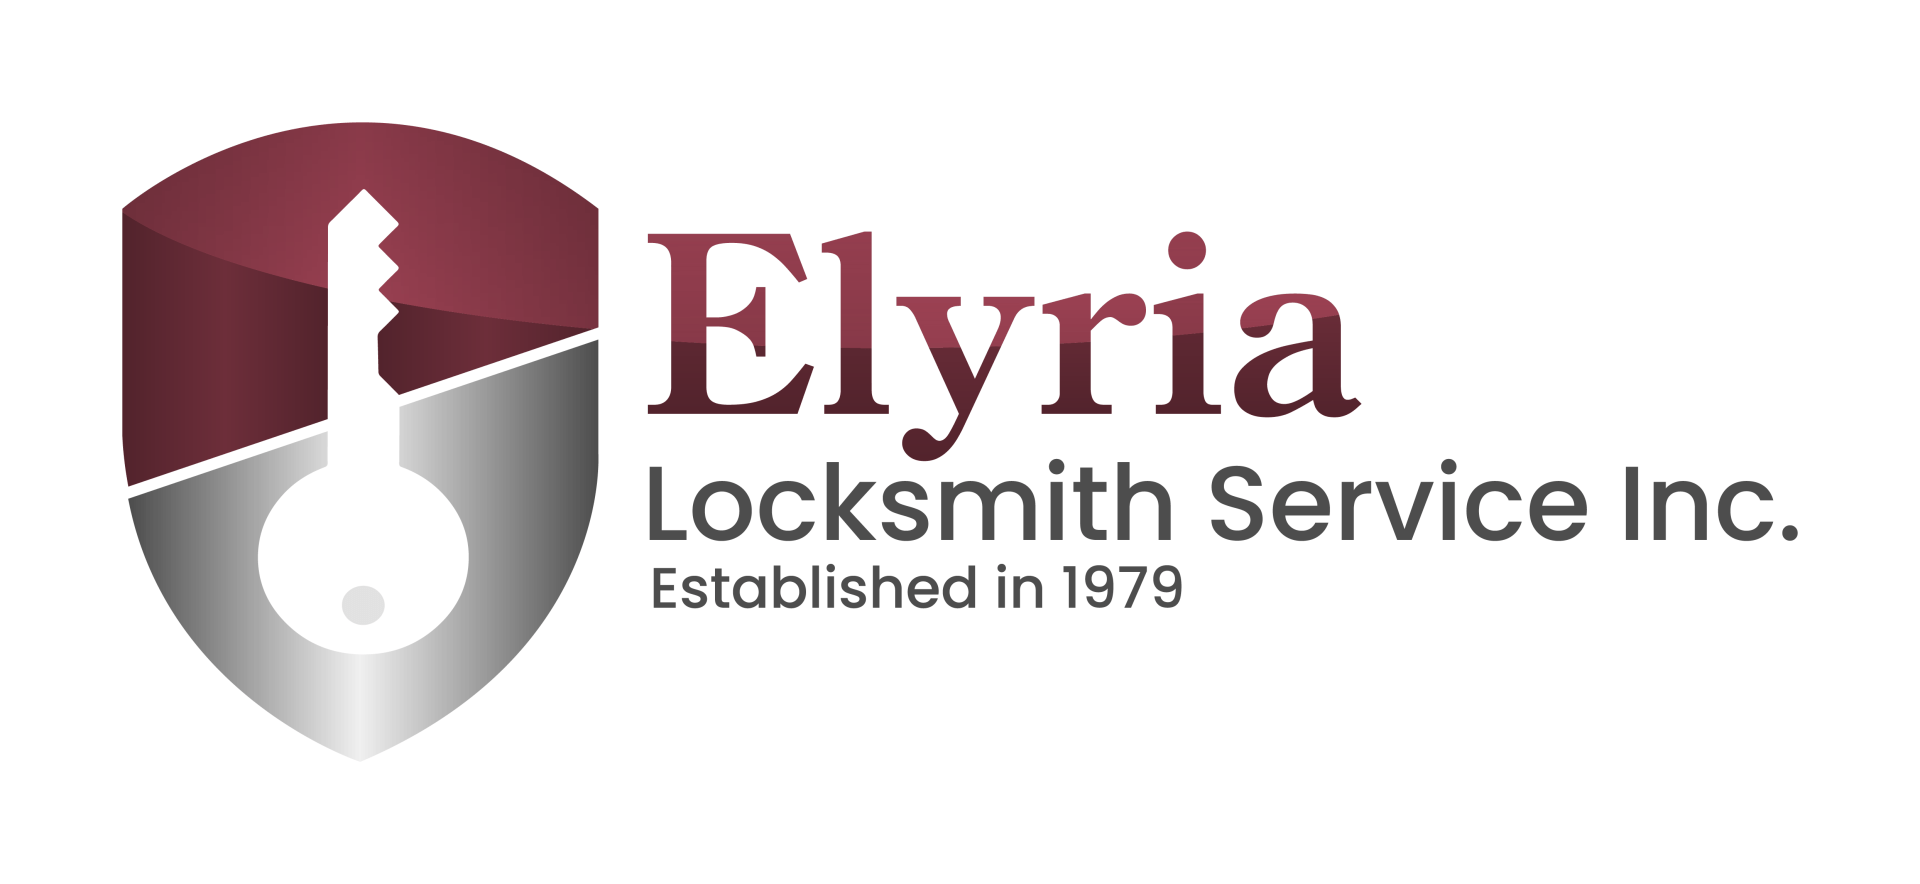 Elyria Locksmith Service, Inc